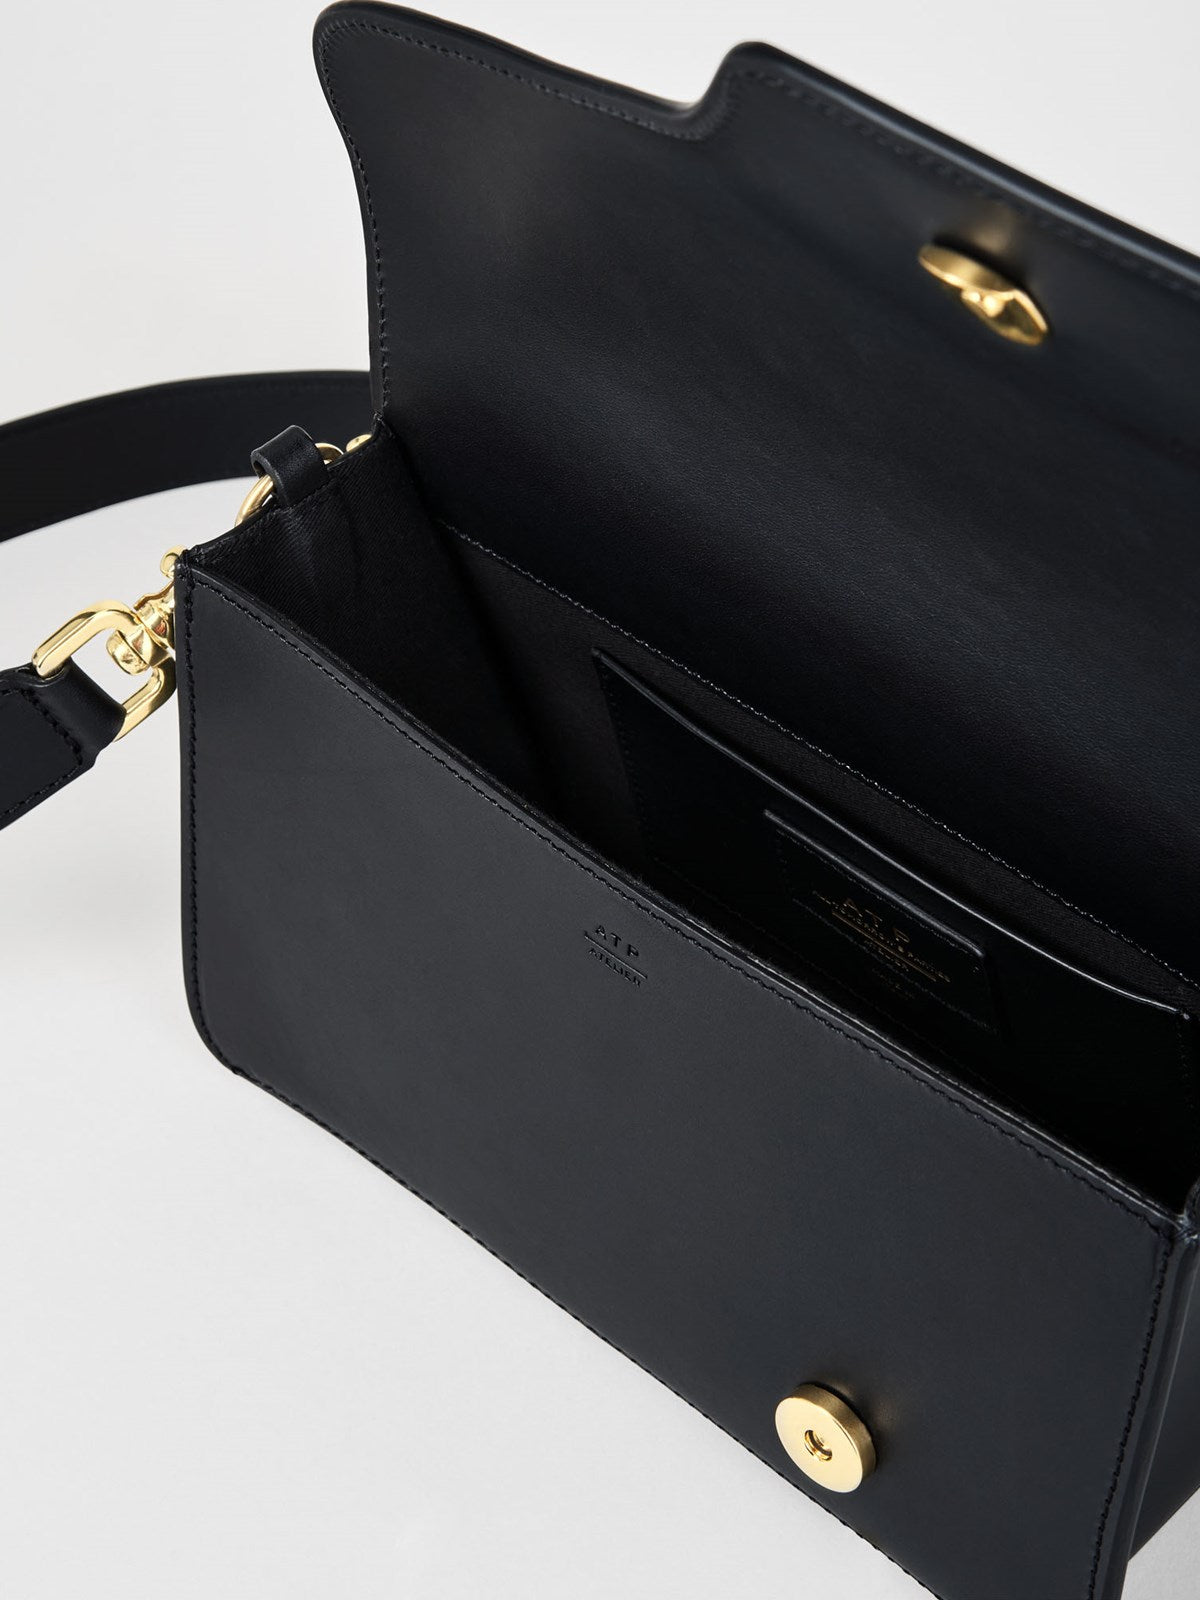 A.T.P. Atelier - bag Assisi black